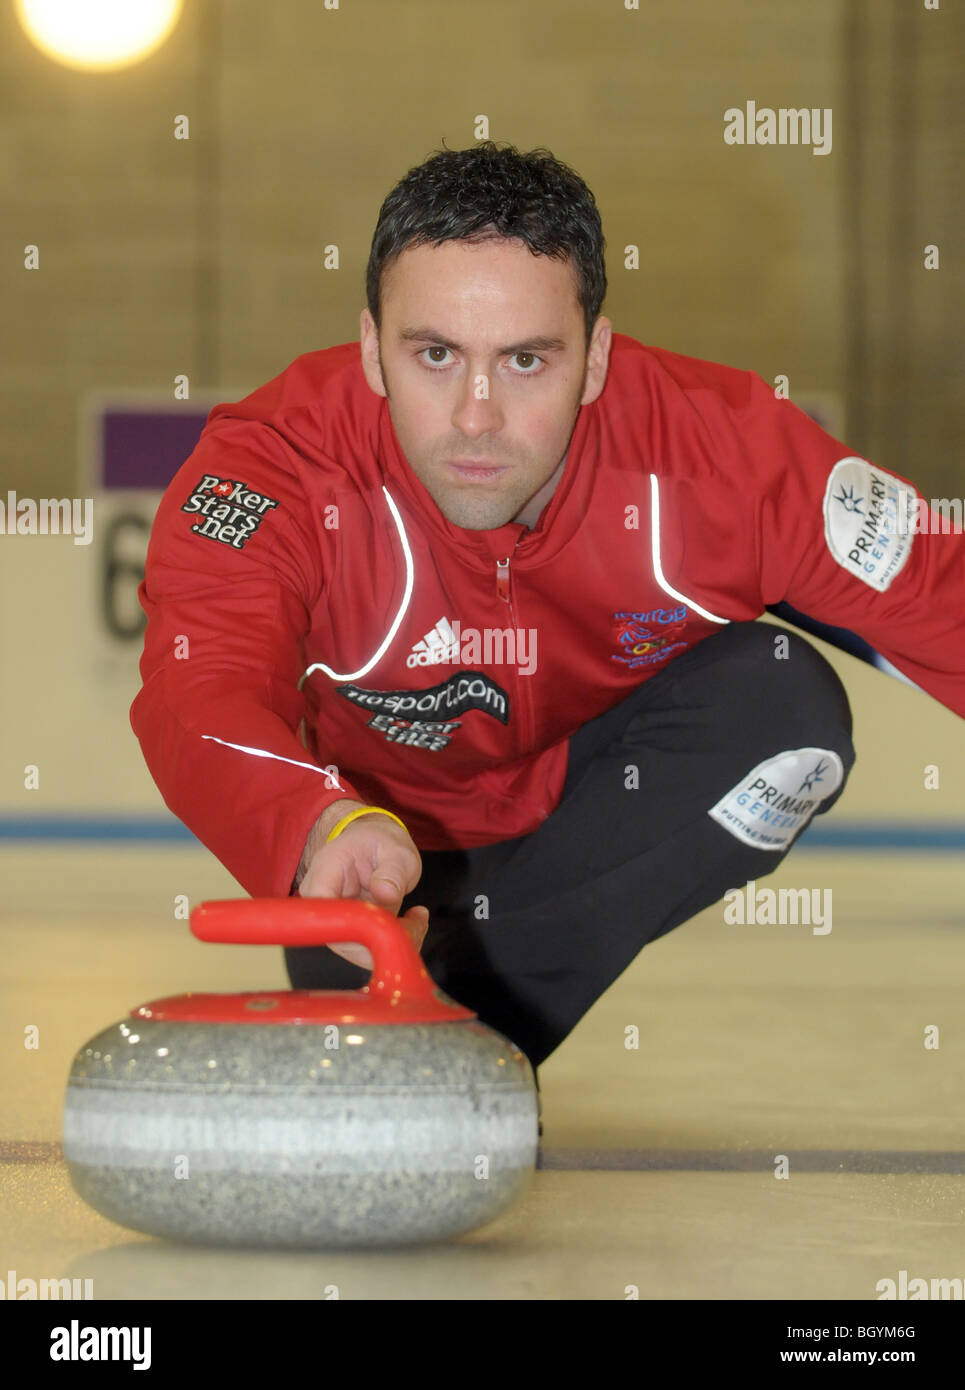 Überspringen Sie David Murdoch, die Männer Team GB Curling-Teams für die Olympischen Winterspiele in Vancouver Kanada 2010. Stockfoto